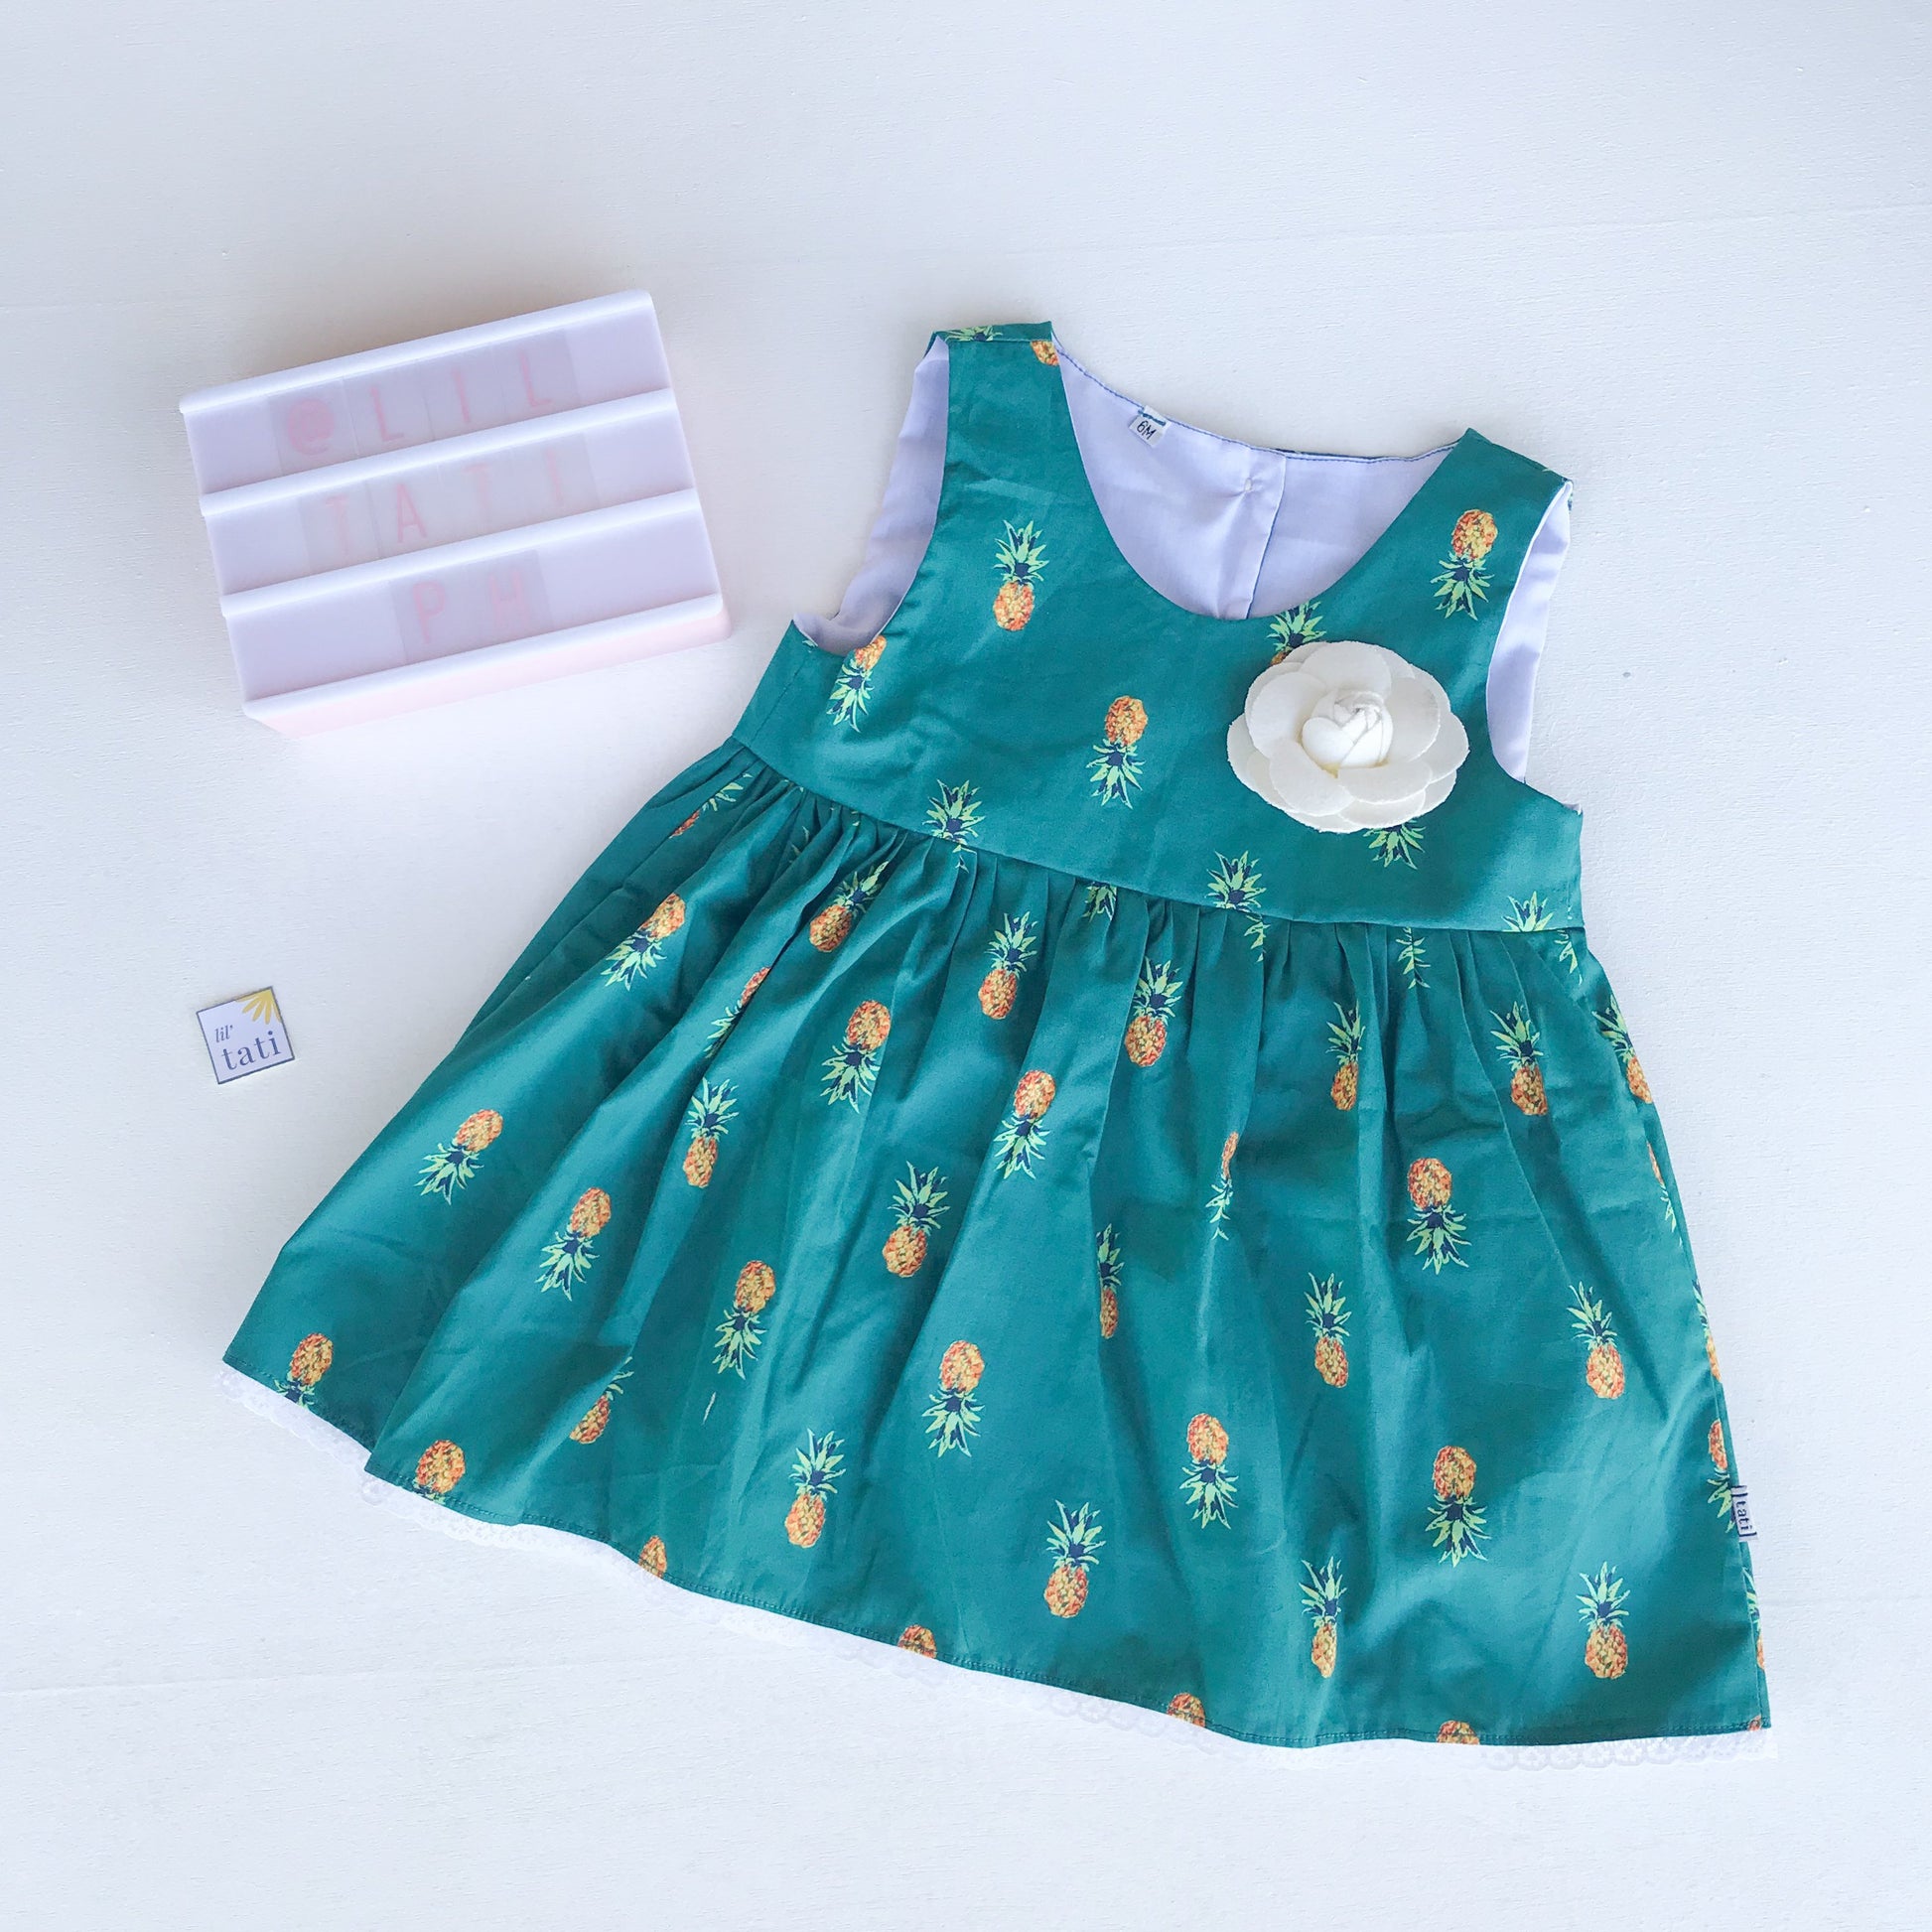 Iris Dress in Bluegreen Pineapple Print - Lil' Tati